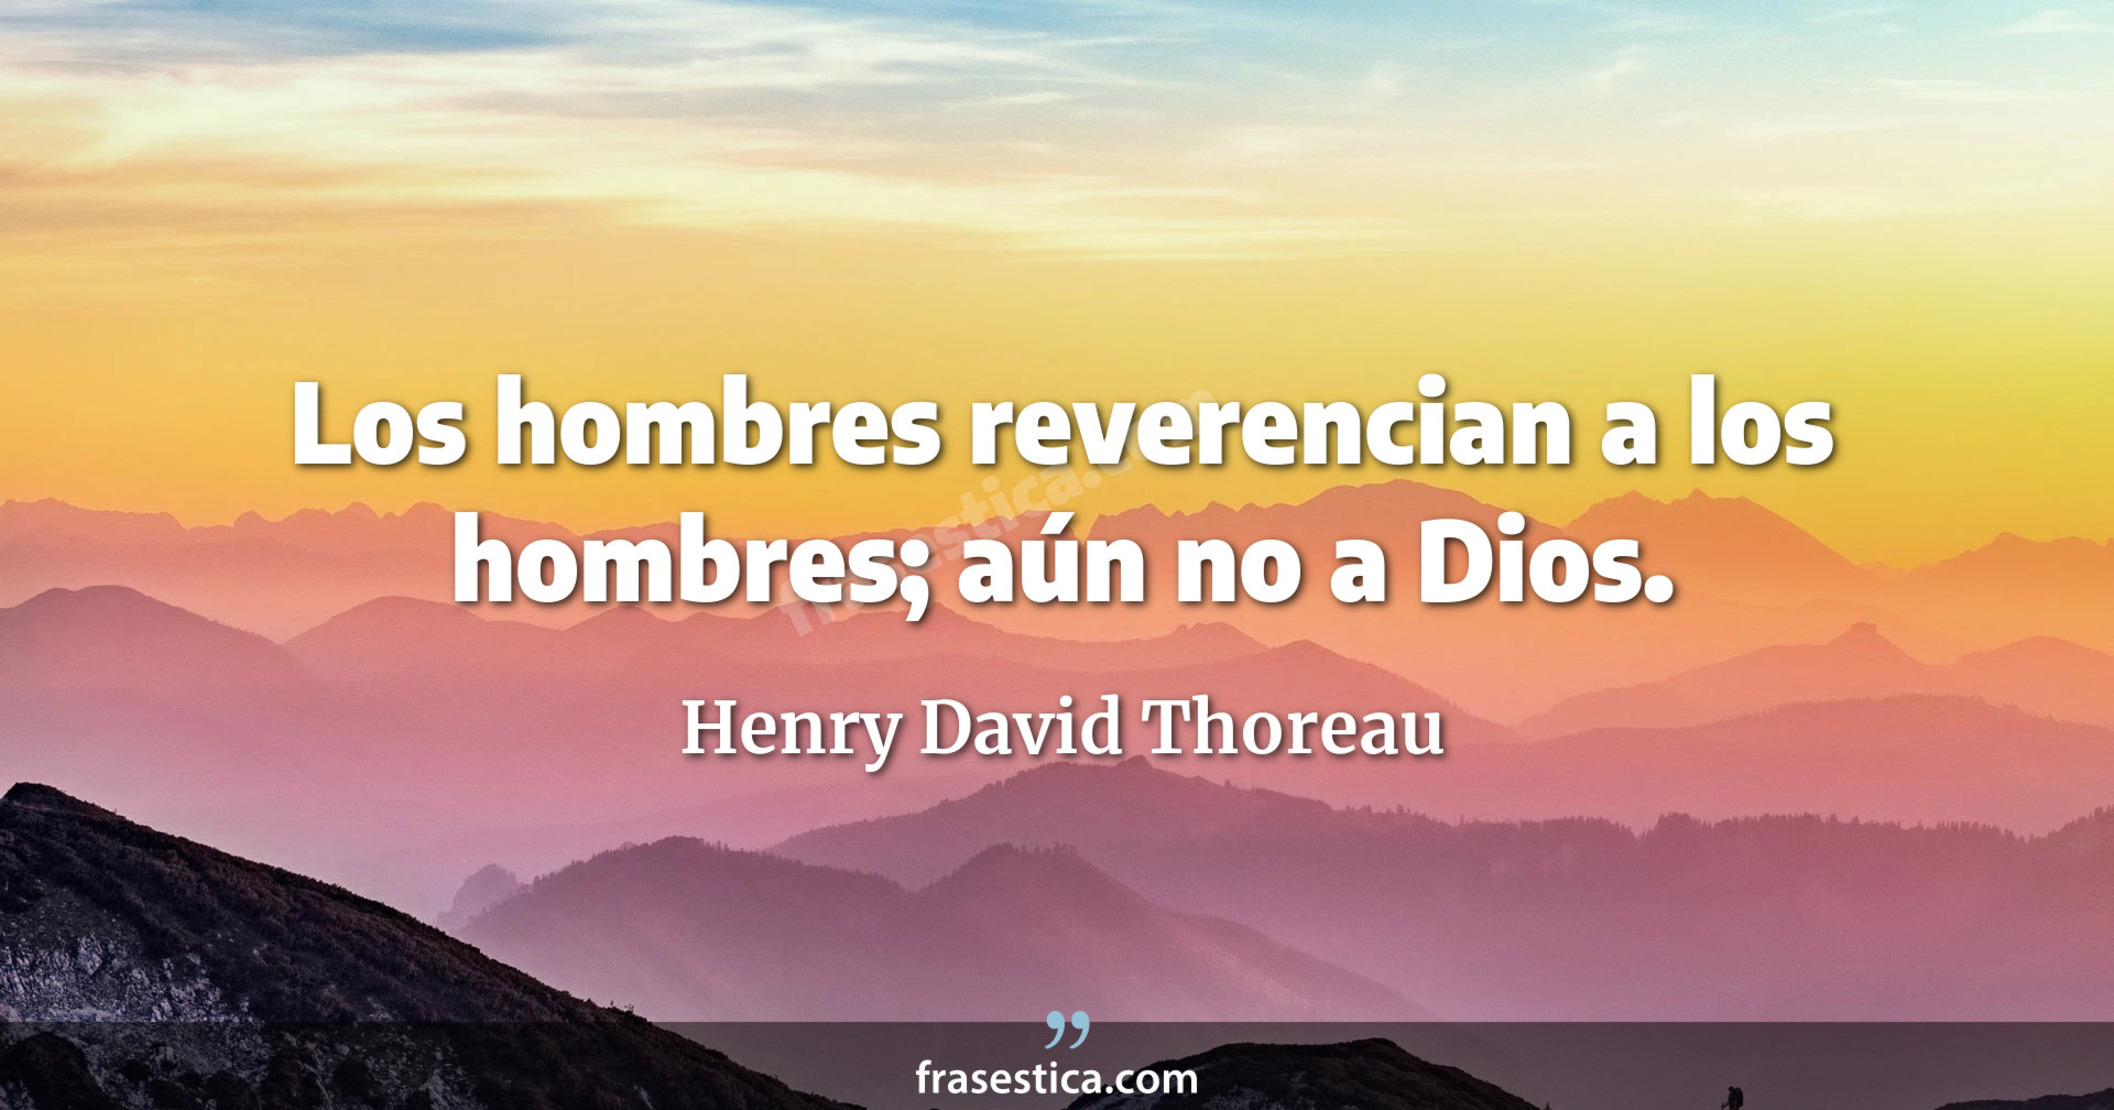 Los hombres reverencian a los hombres; aún no a Dios. - Henry David Thoreau